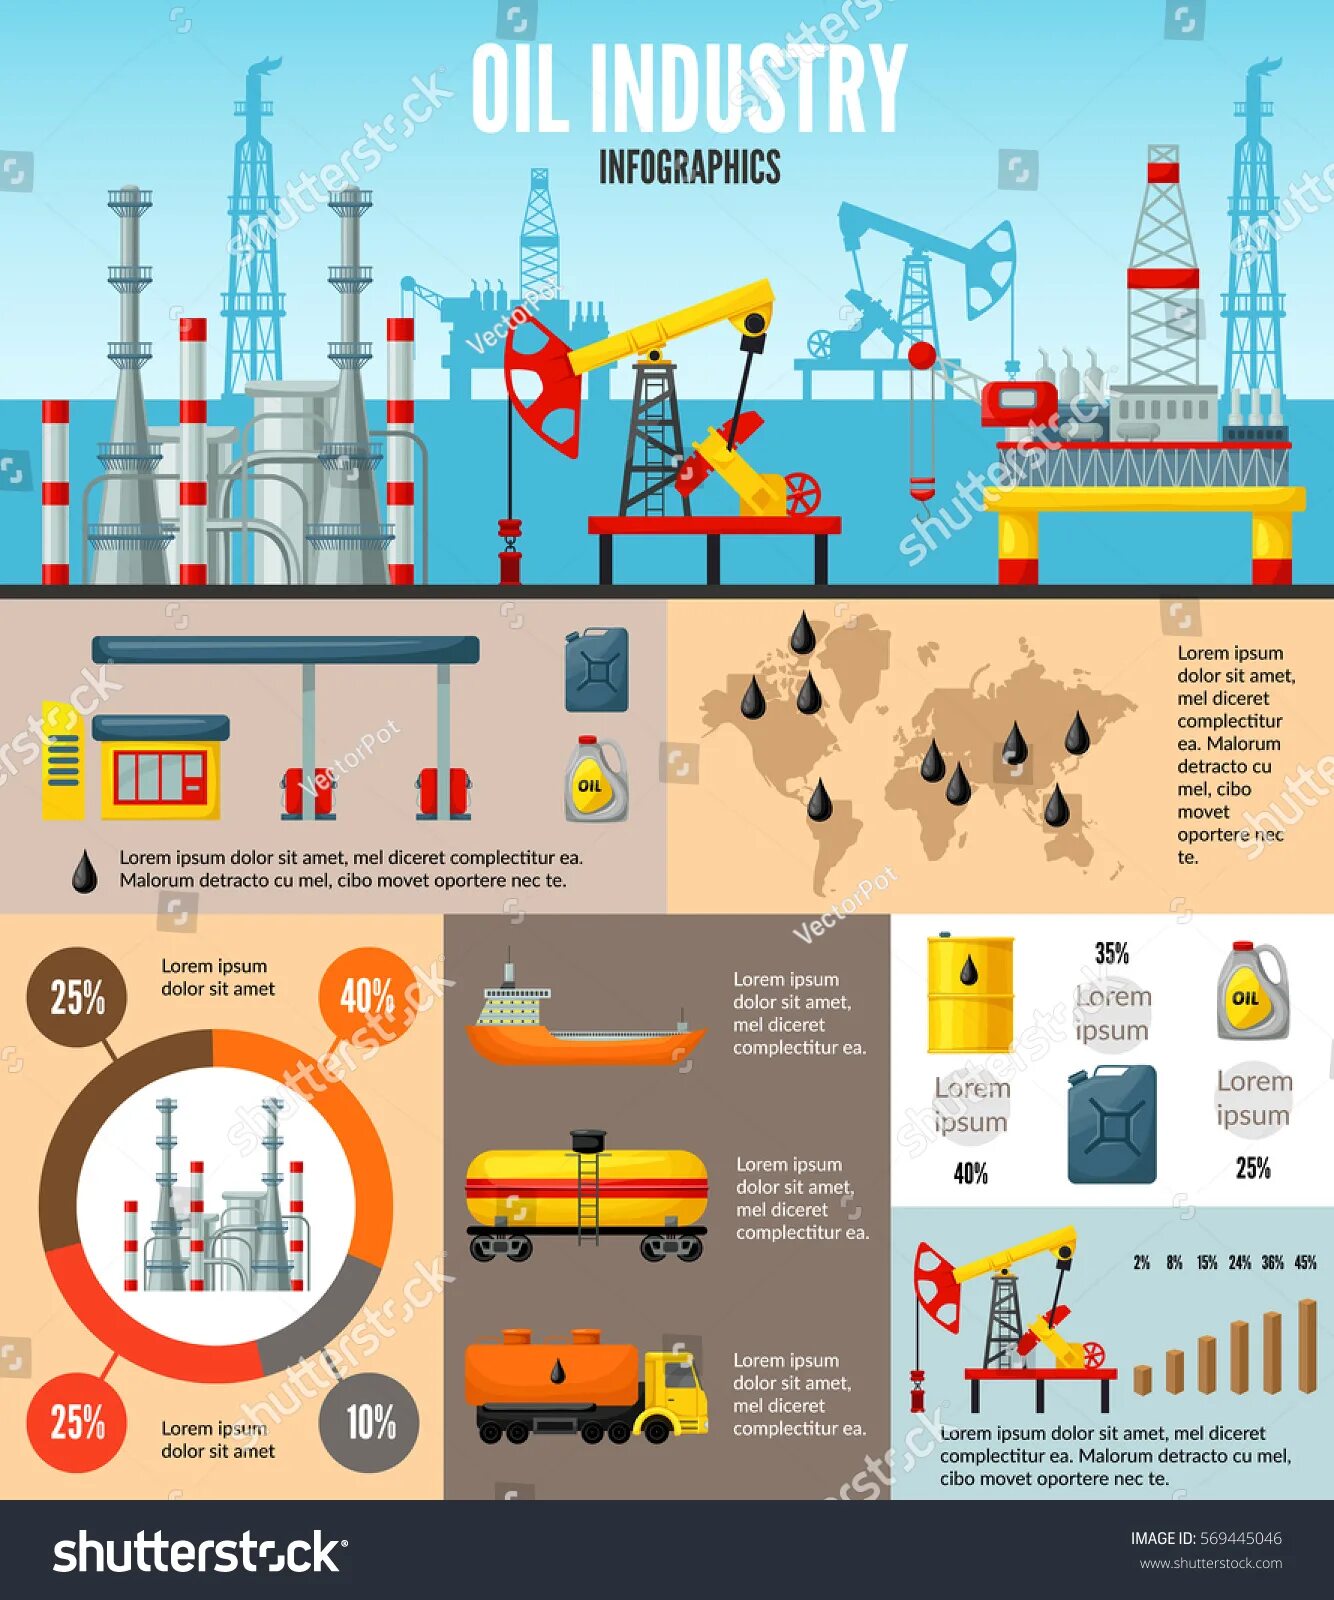 Инфографика нефтегазовая отрасль. Инфографика нефть. Инфографика нефтянка. Инфографика нефтяная промышленность.